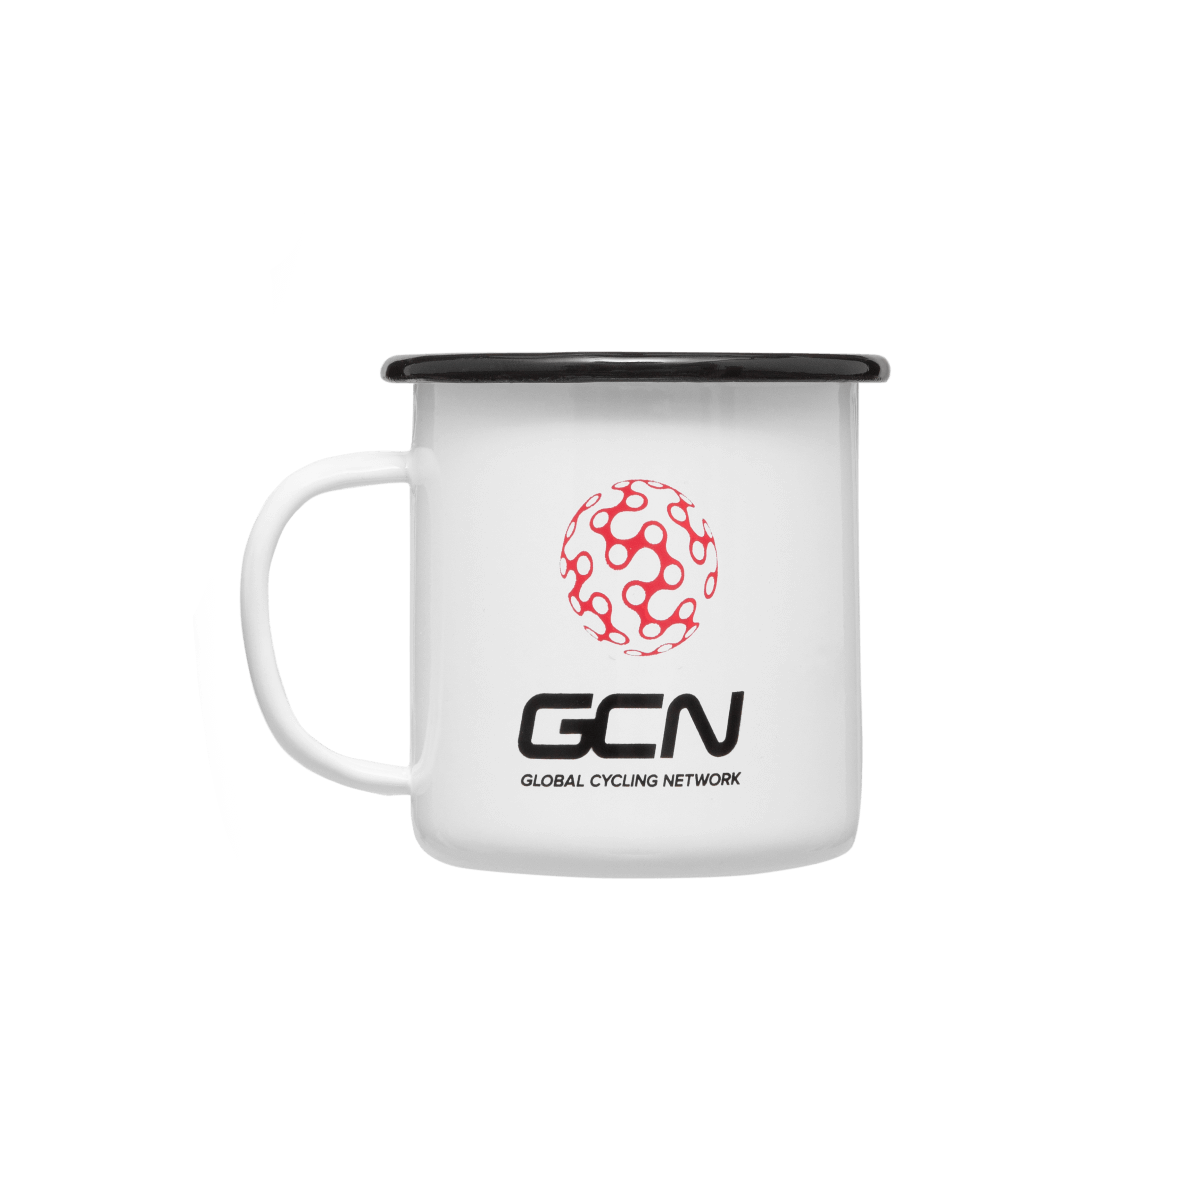 GCN Enamel Mug